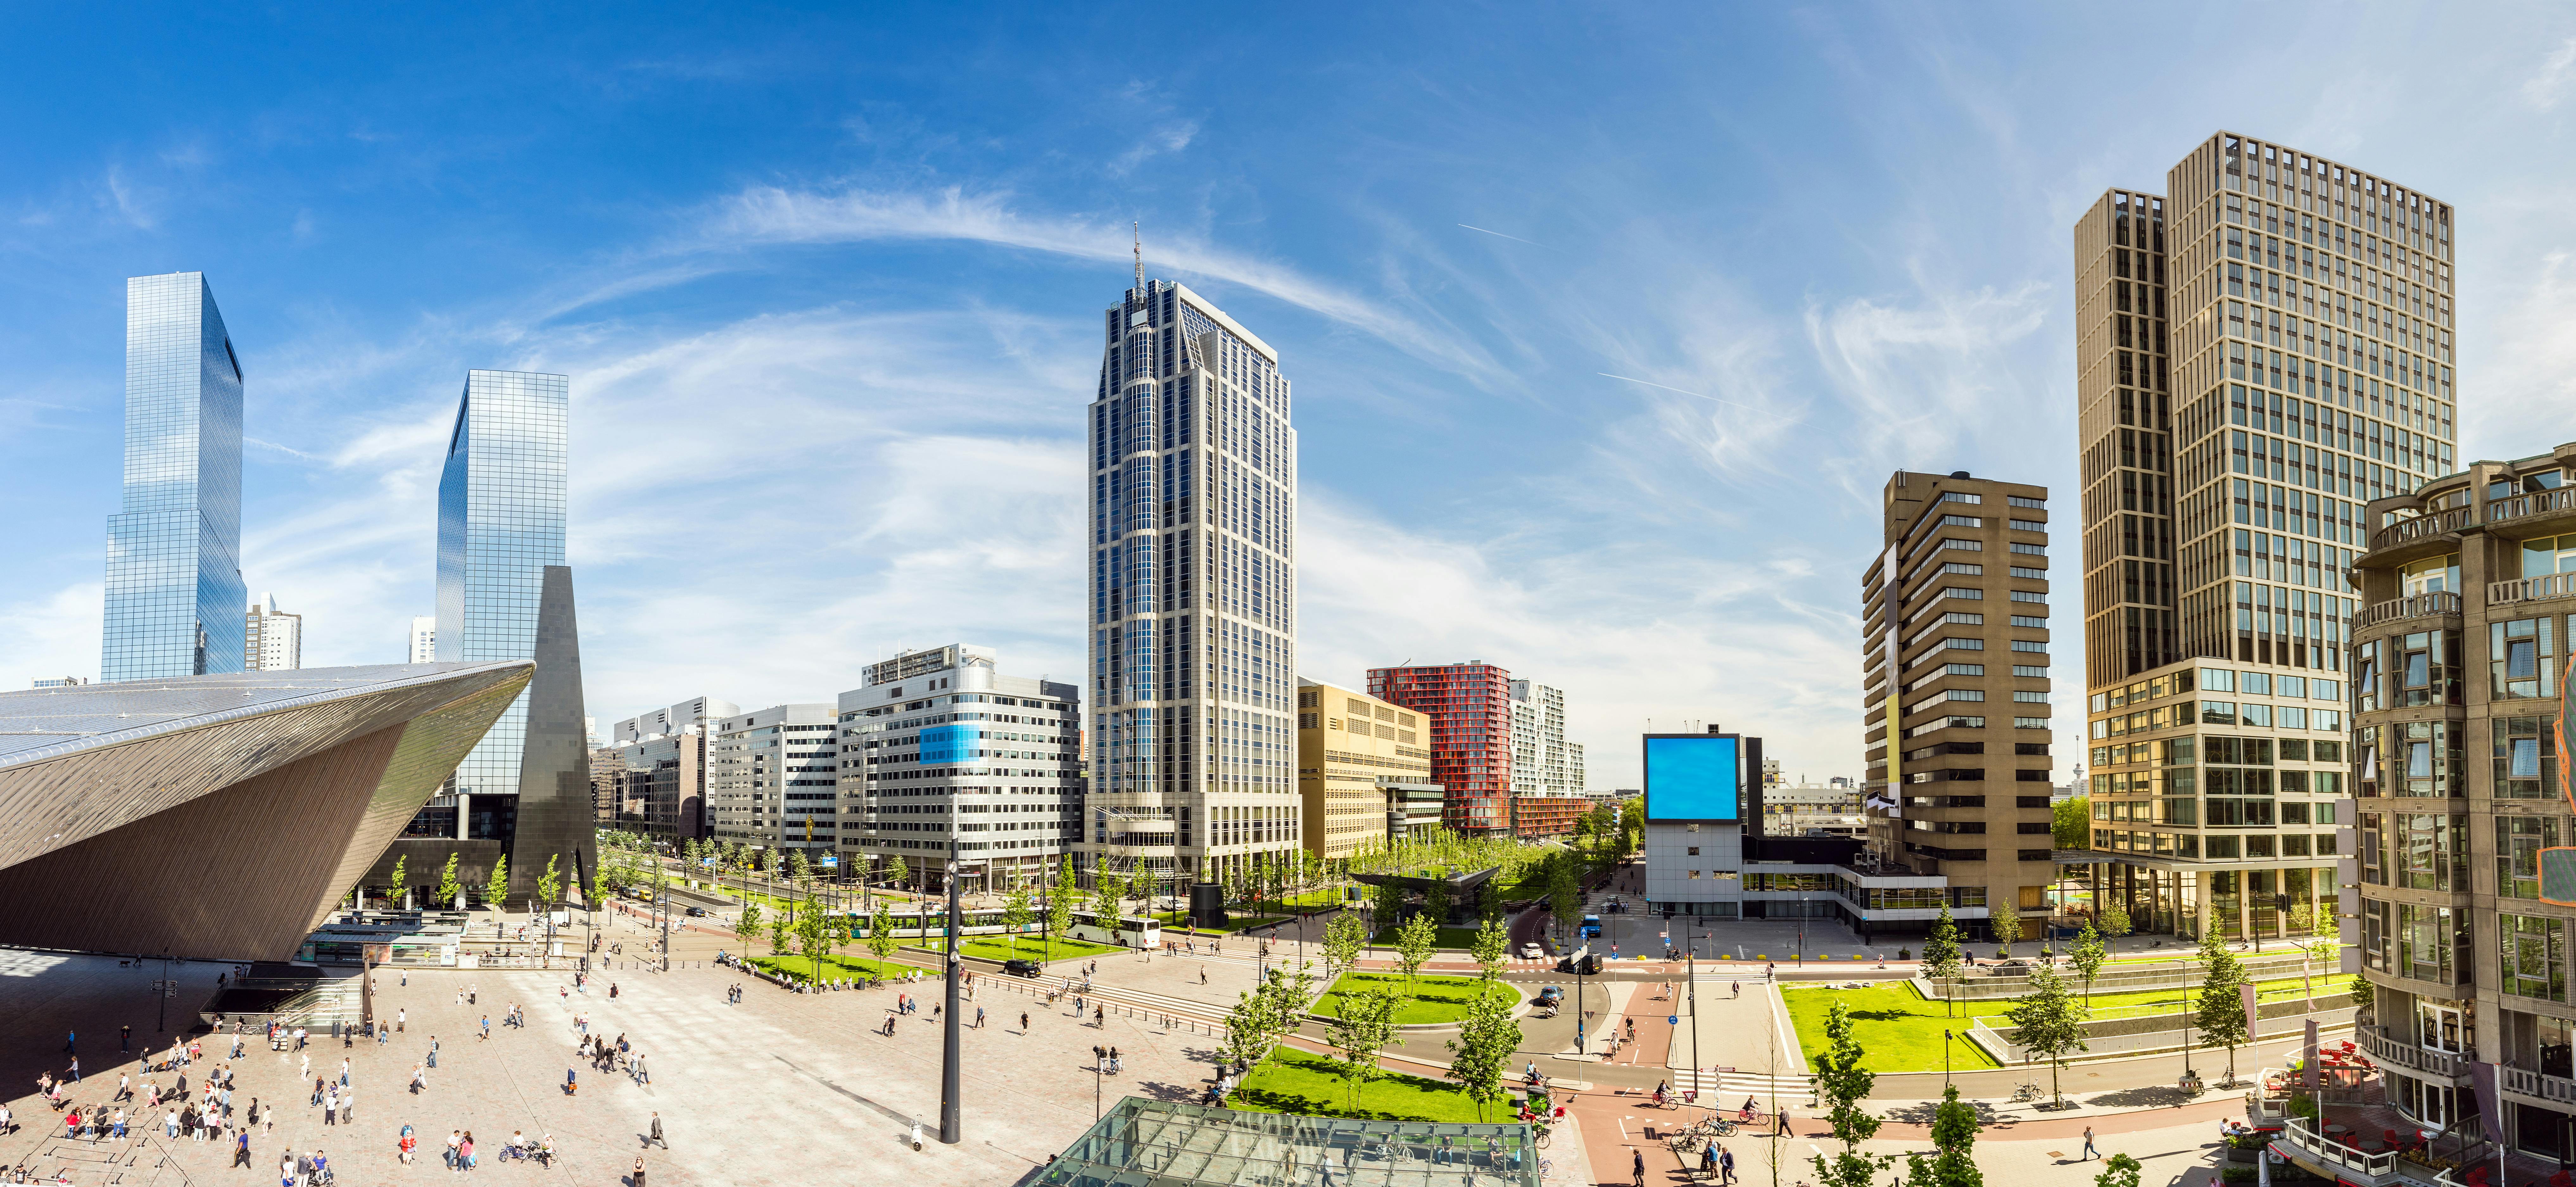 Smart wandeling in Rotterdam met een interactief stadsspel